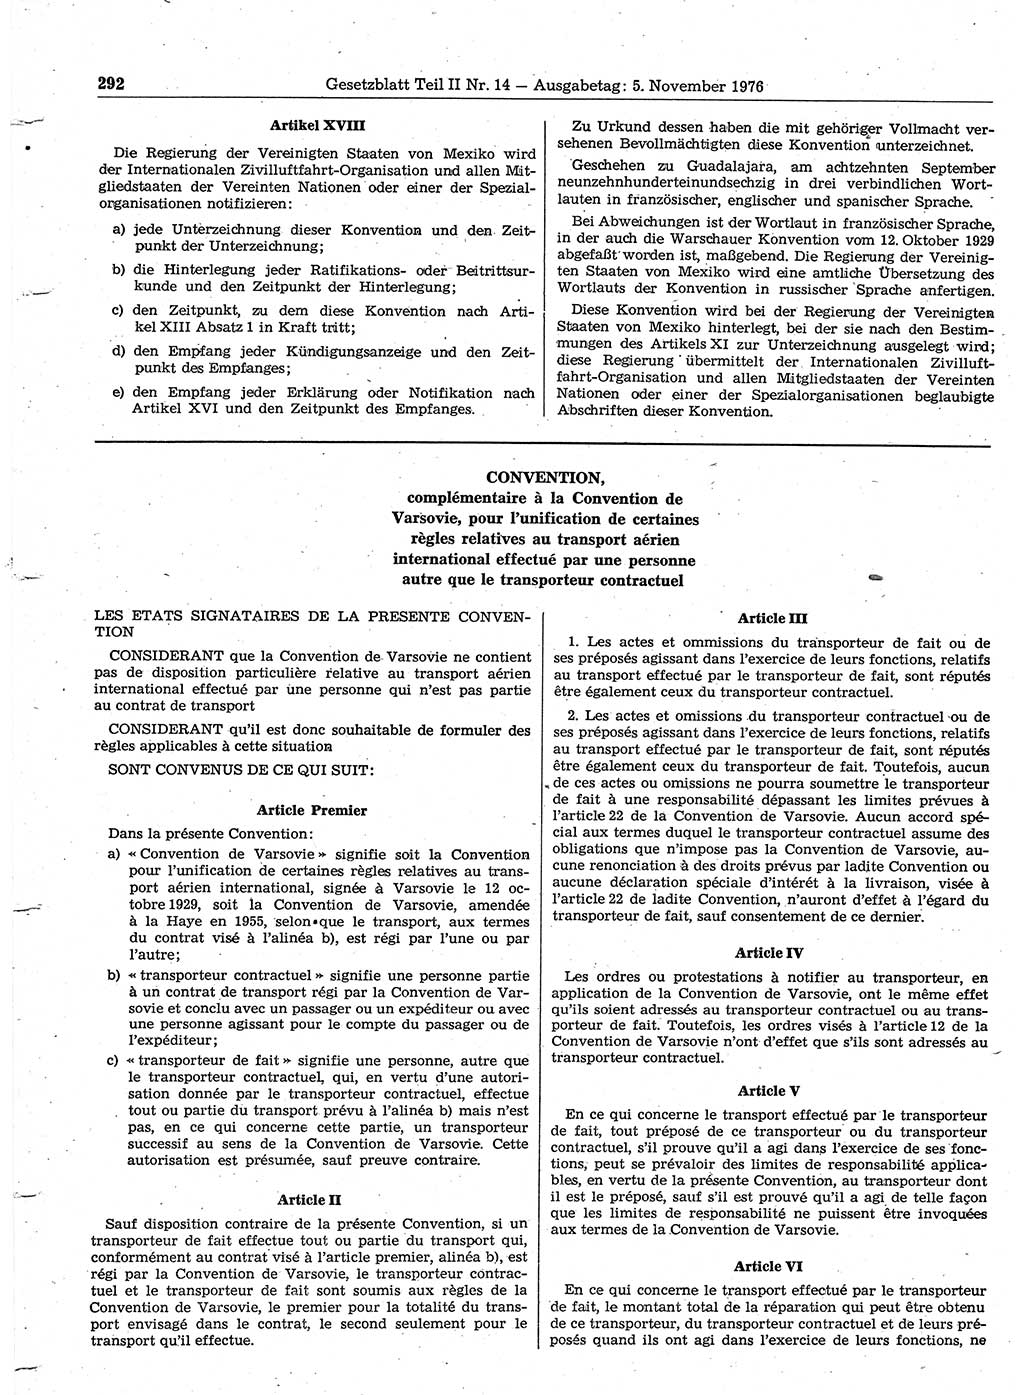 Gesetzblatt (GBl.) der Deutschen Demokratischen Republik (DDR) Teil ⅠⅠ 1976, Seite 292 (GBl. DDR ⅠⅠ 1976, S. 292)